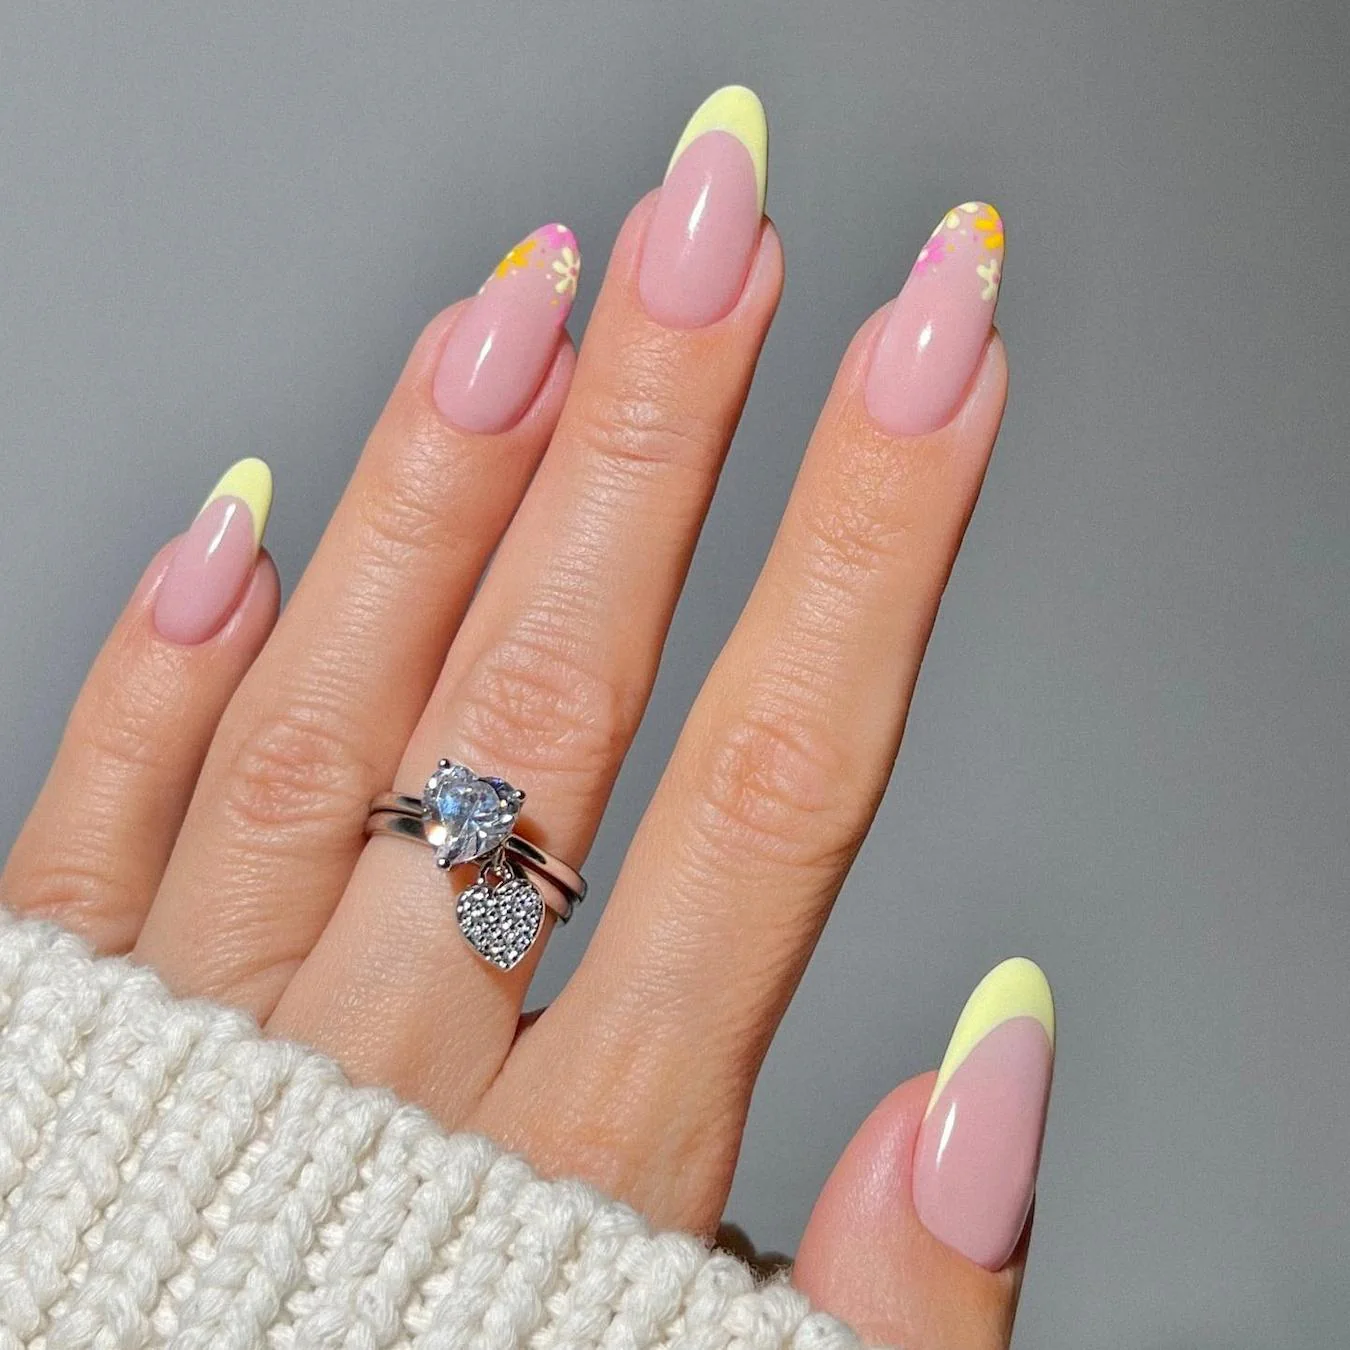 cute nails